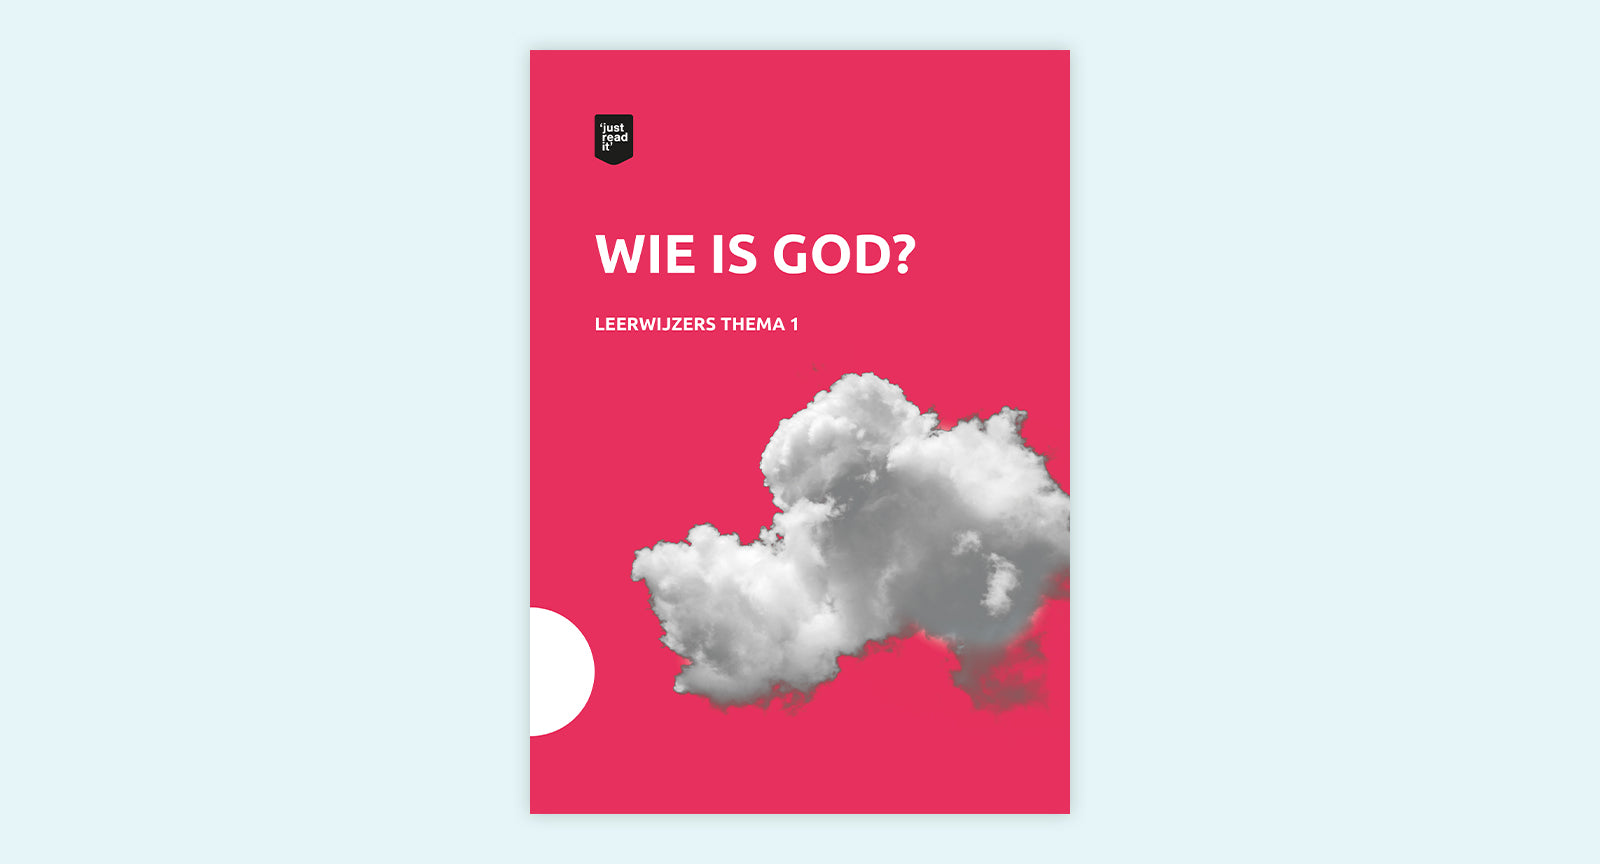 Leerwijzer thema 1 - Wie is God?